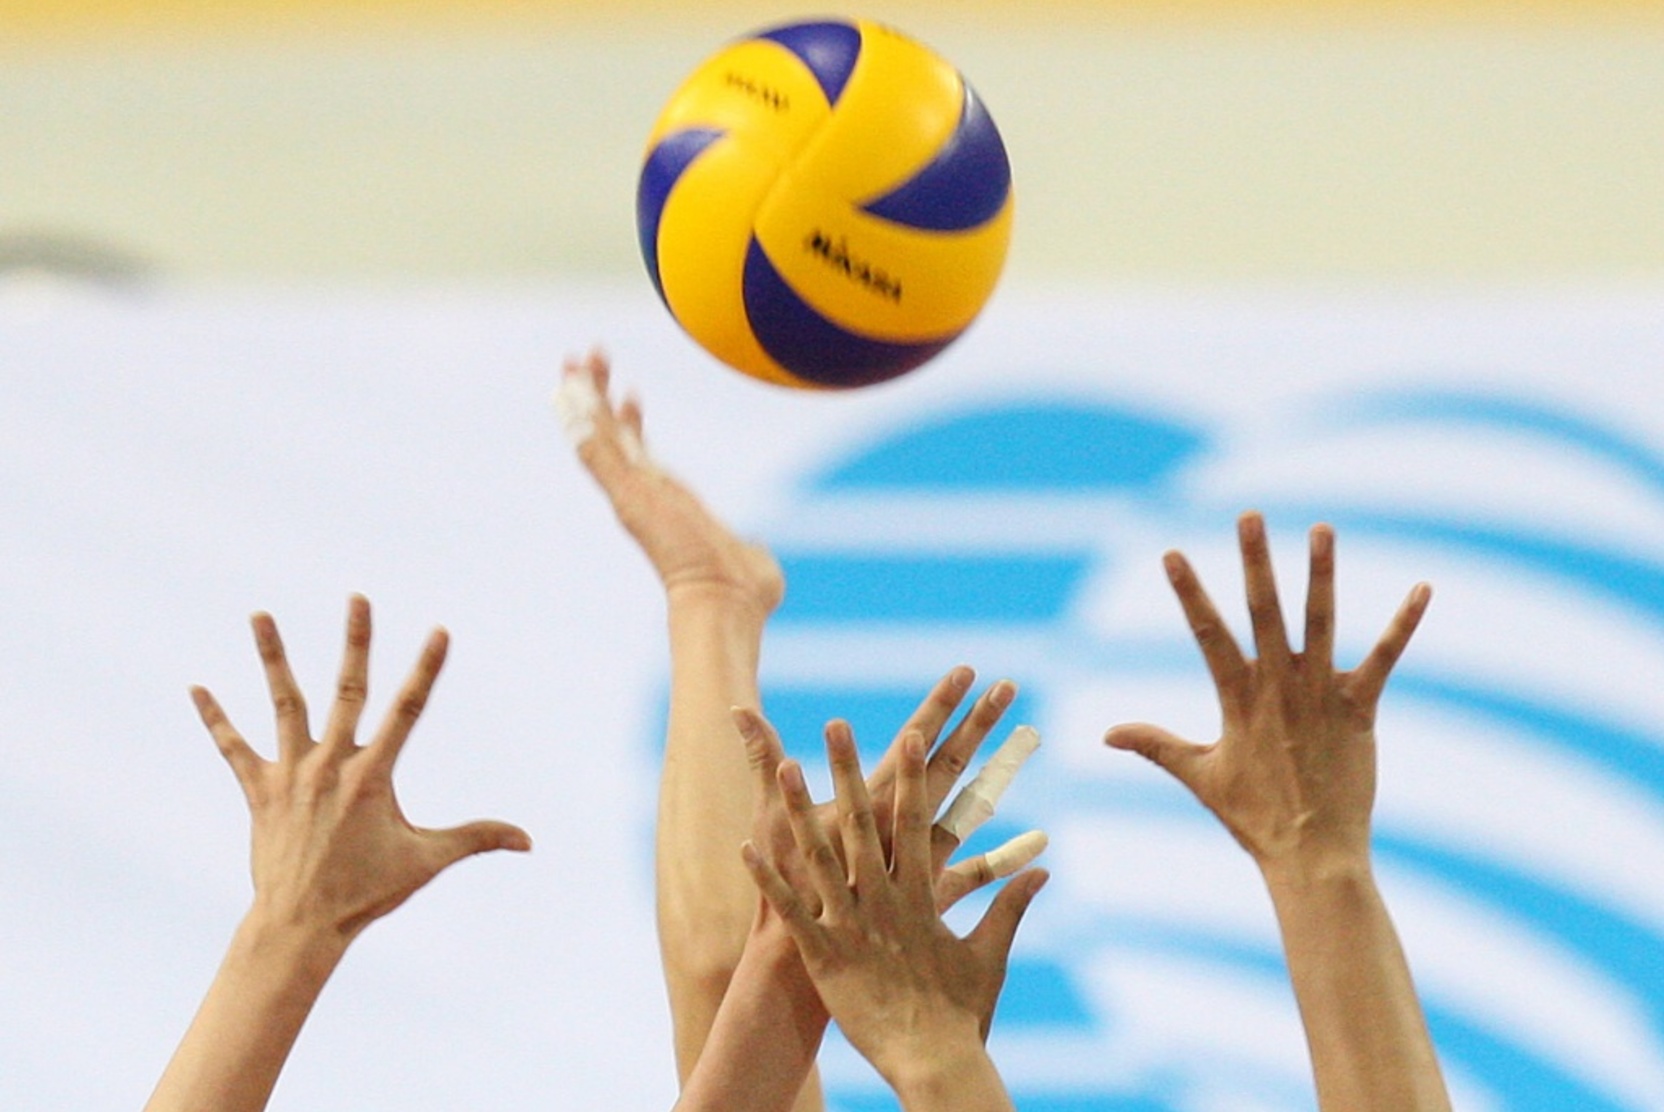 Сборная России по волейболу выбывает из ЧЕ, проиграв Словении в четверьфинале